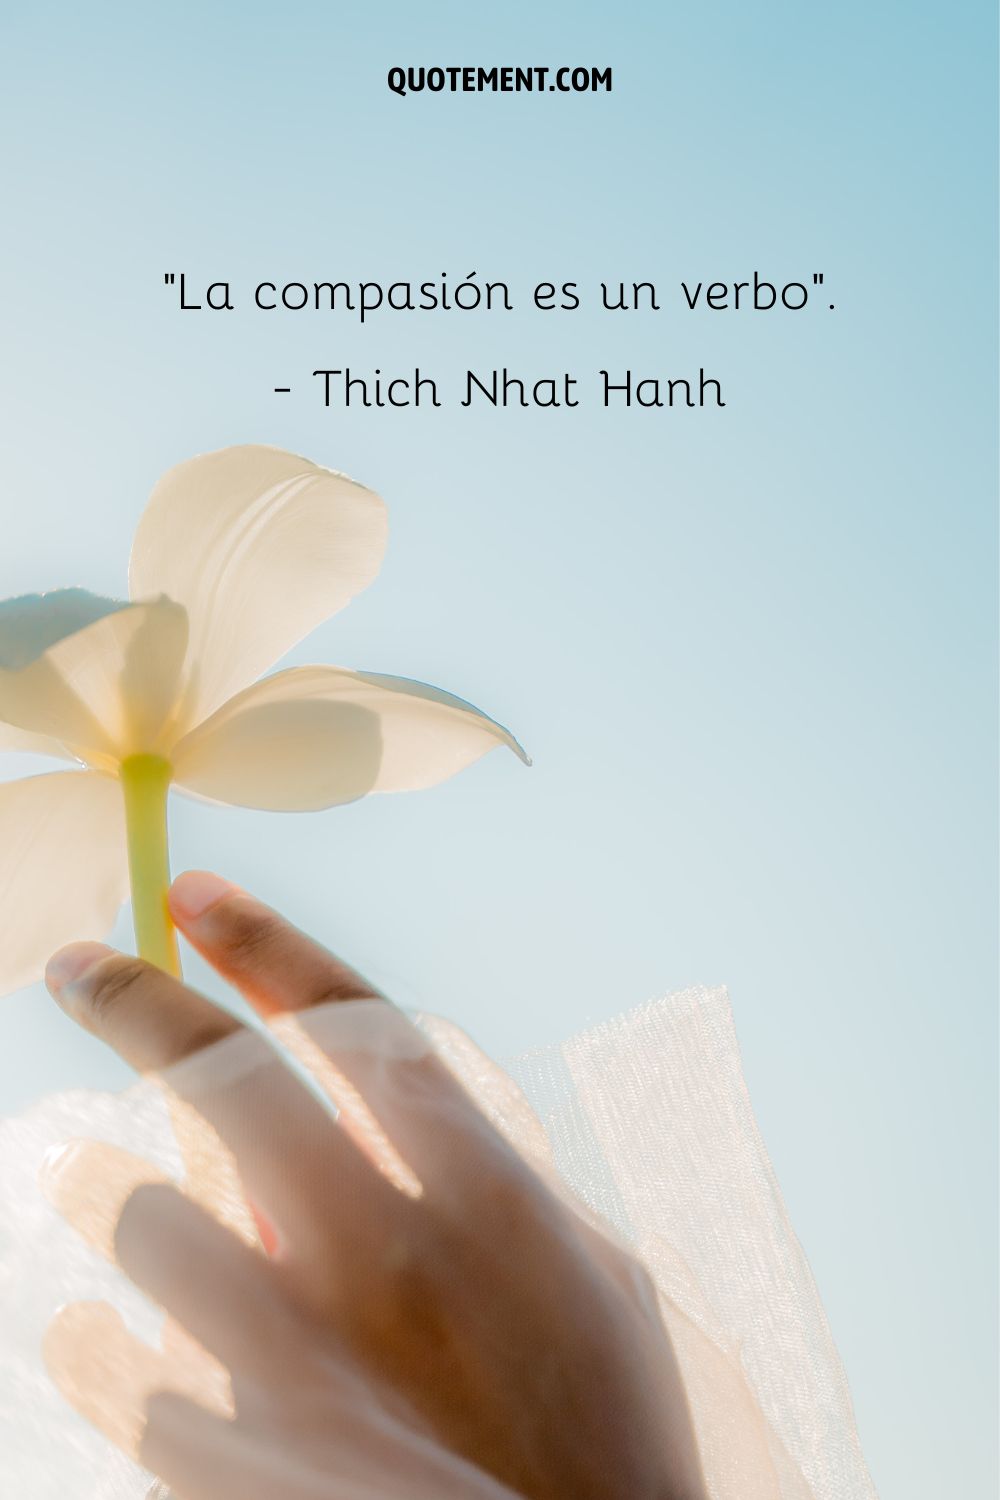 La compasión es un verbo